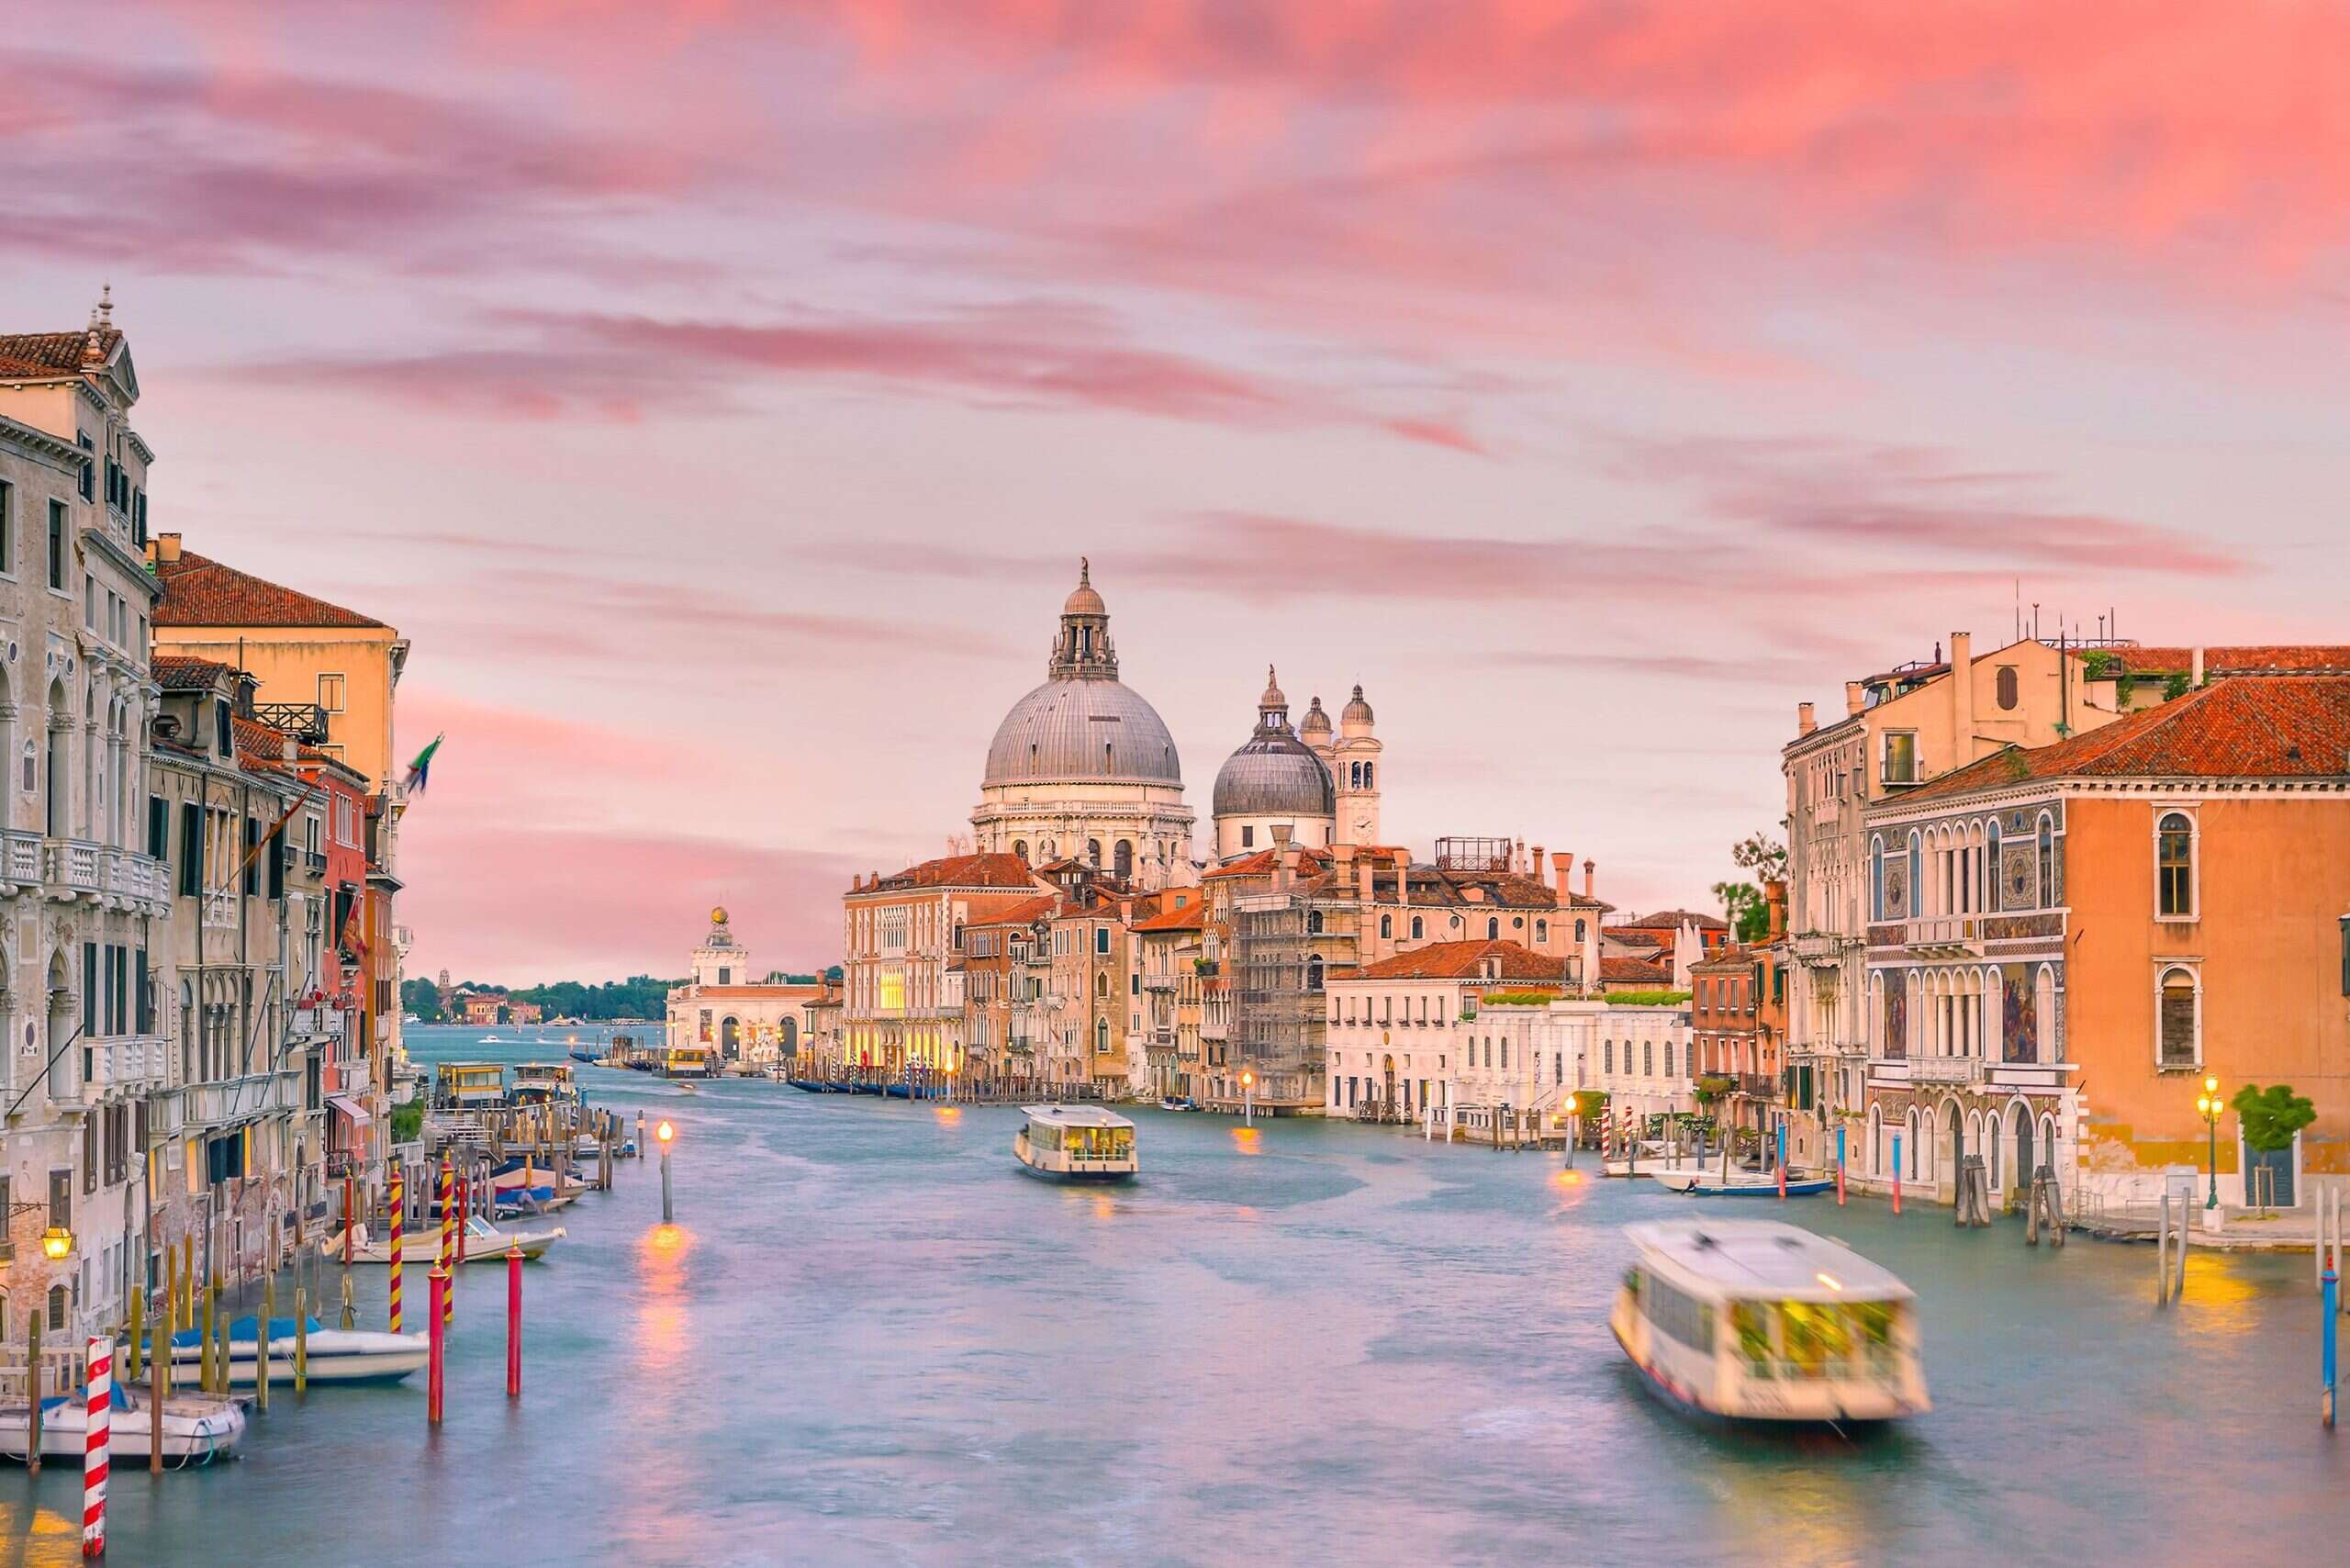 The Best Restaurants in Venice